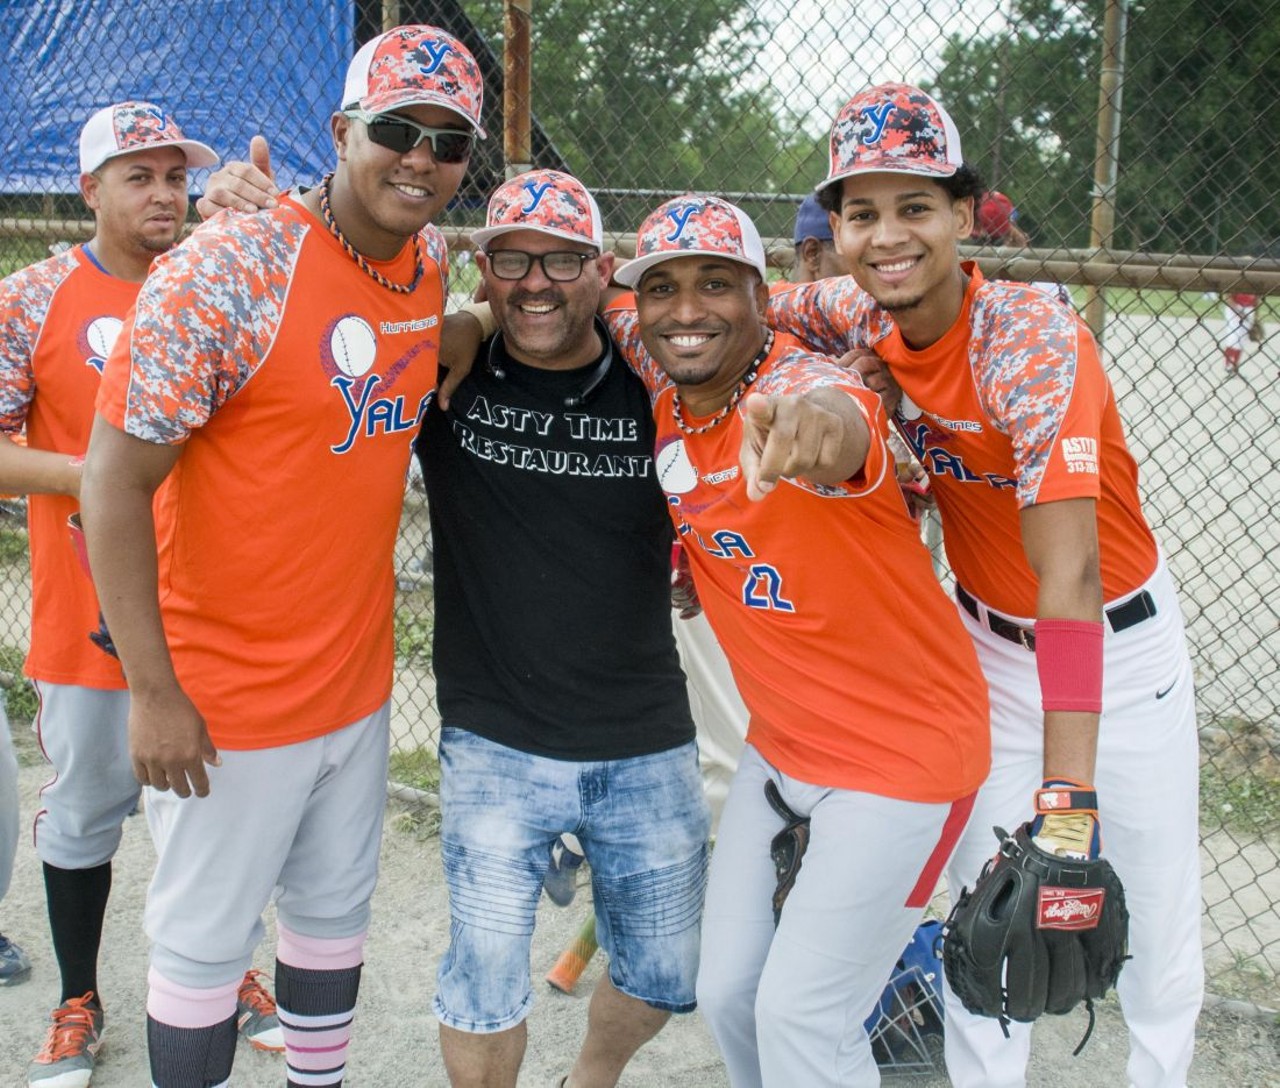 Photos from Detroit's Caribbean softball league